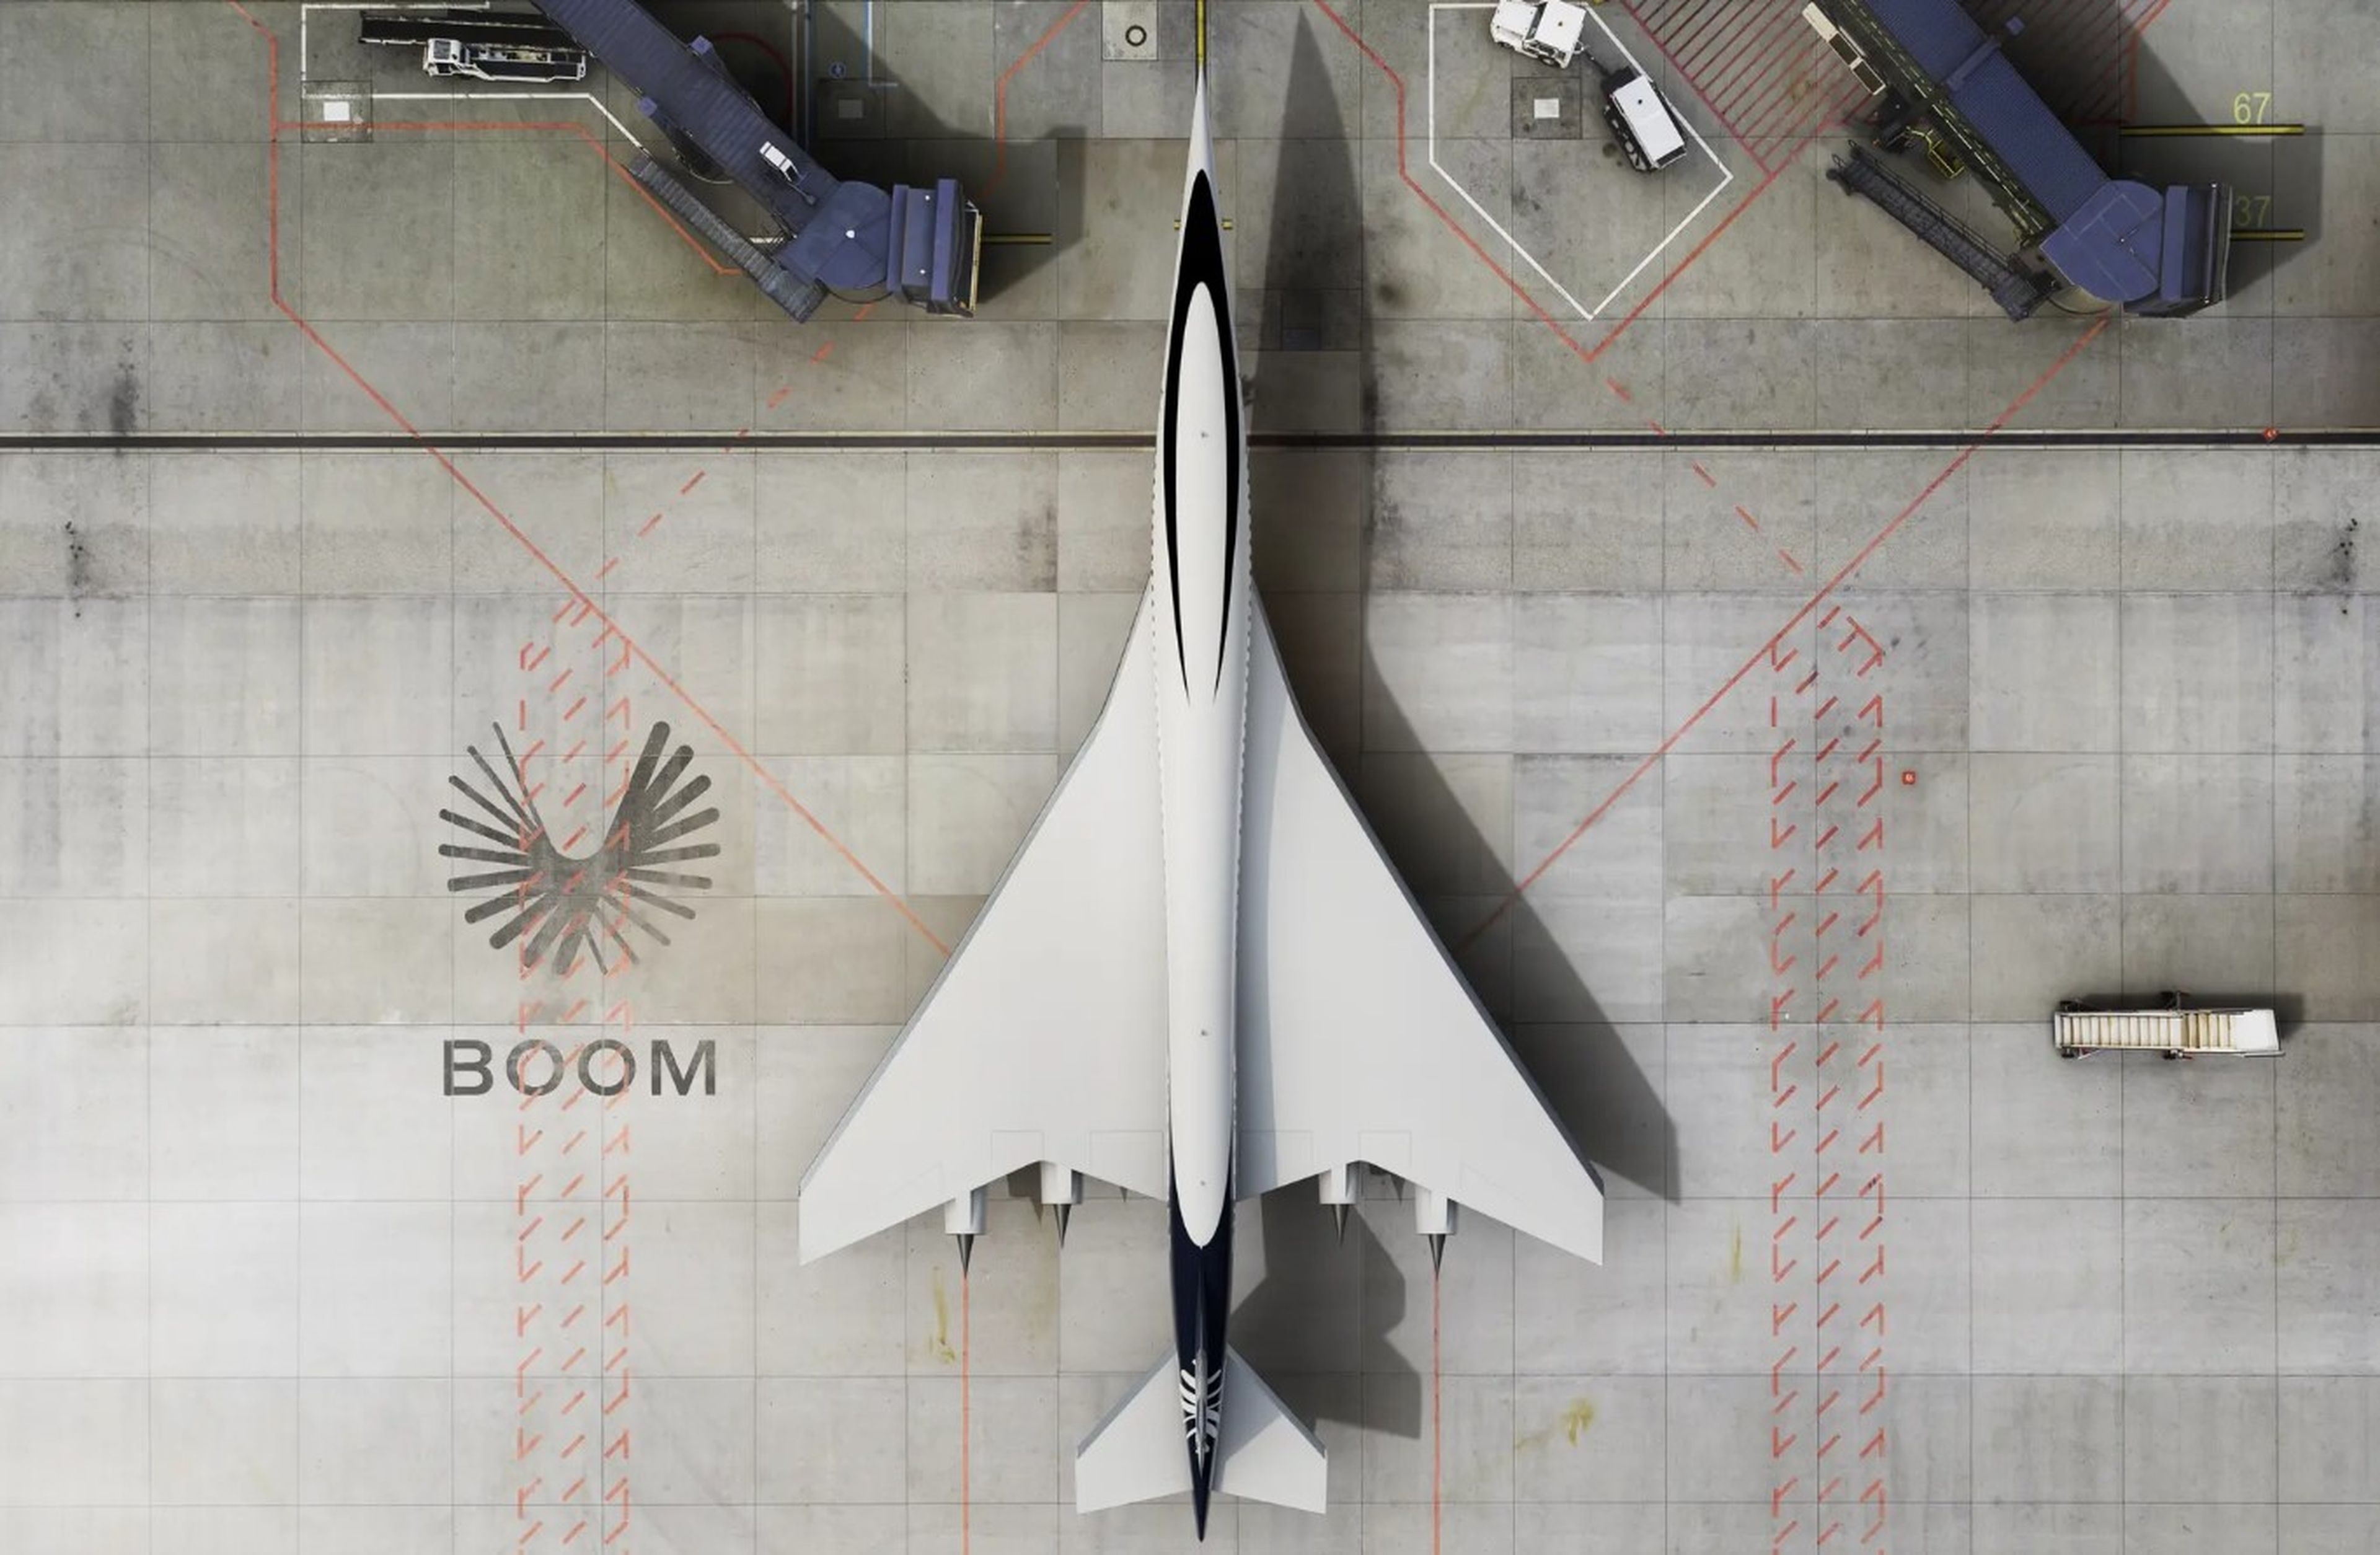 American Airlines apuesta de lleno por el sucesor del Concorde y los vuelos supersónicos